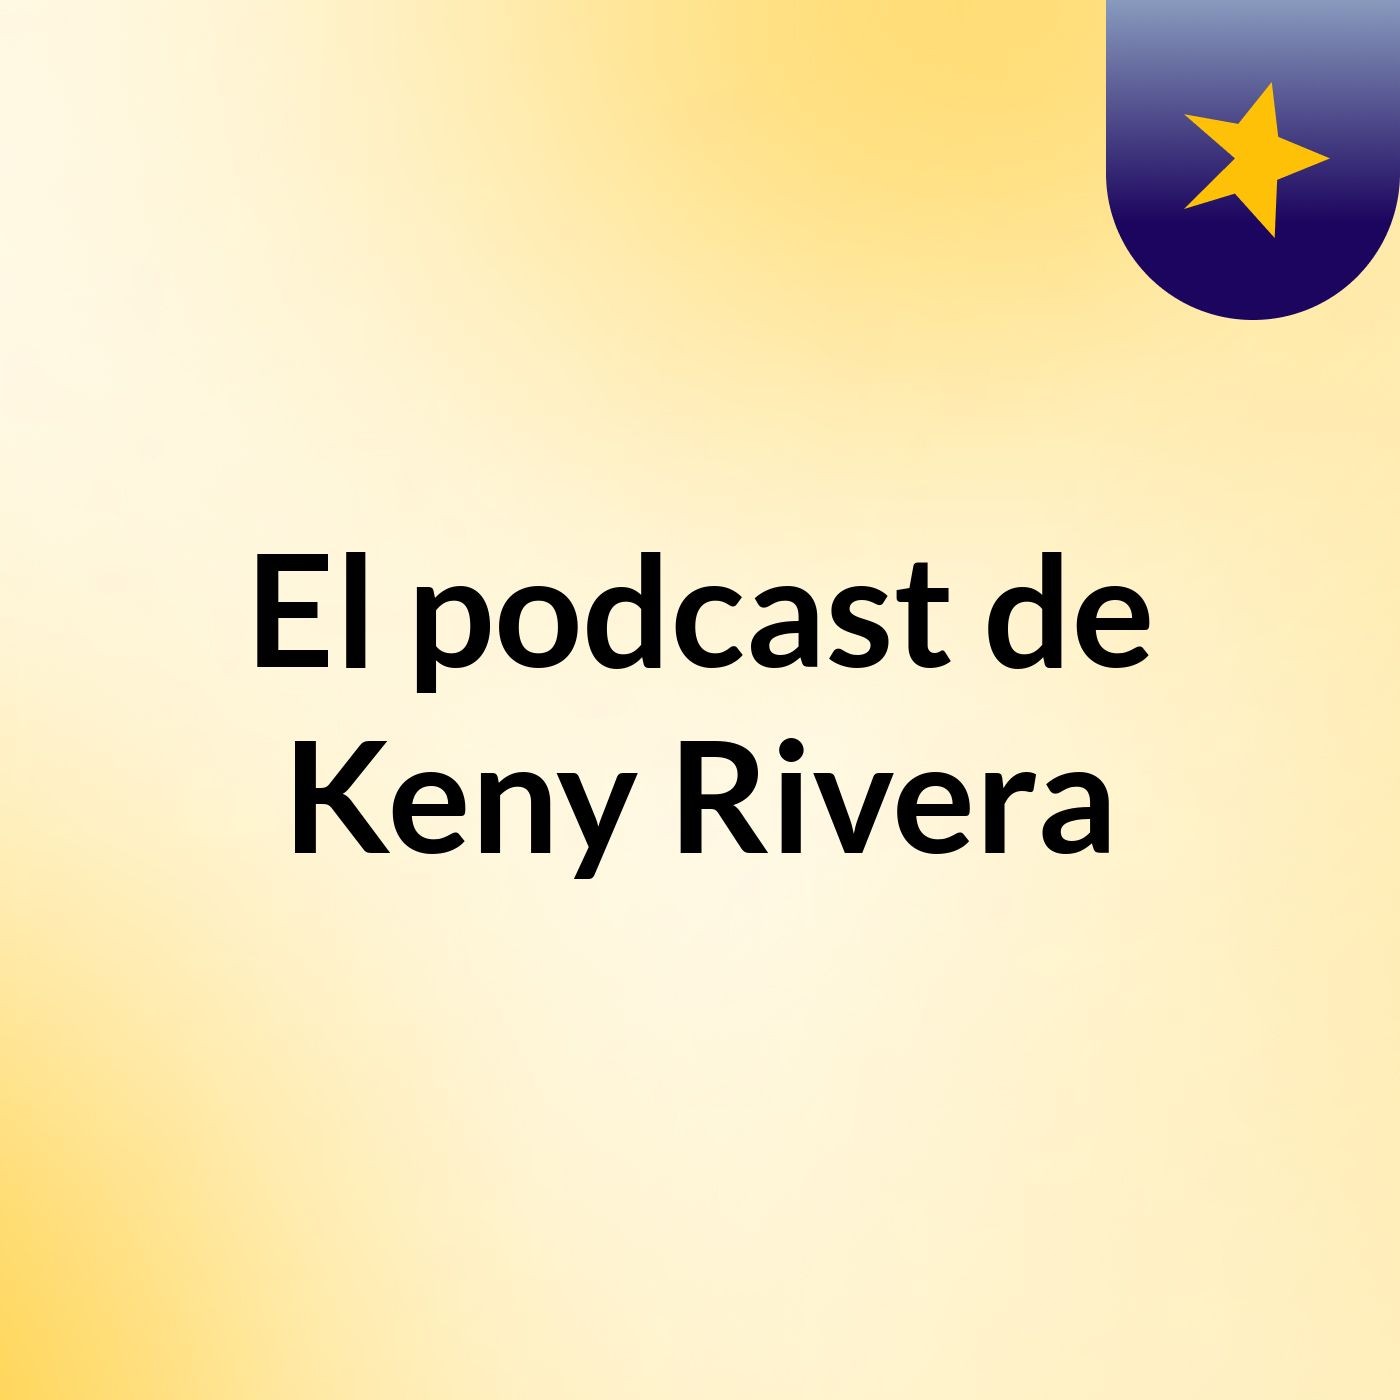 El podcast de Keny Rivera